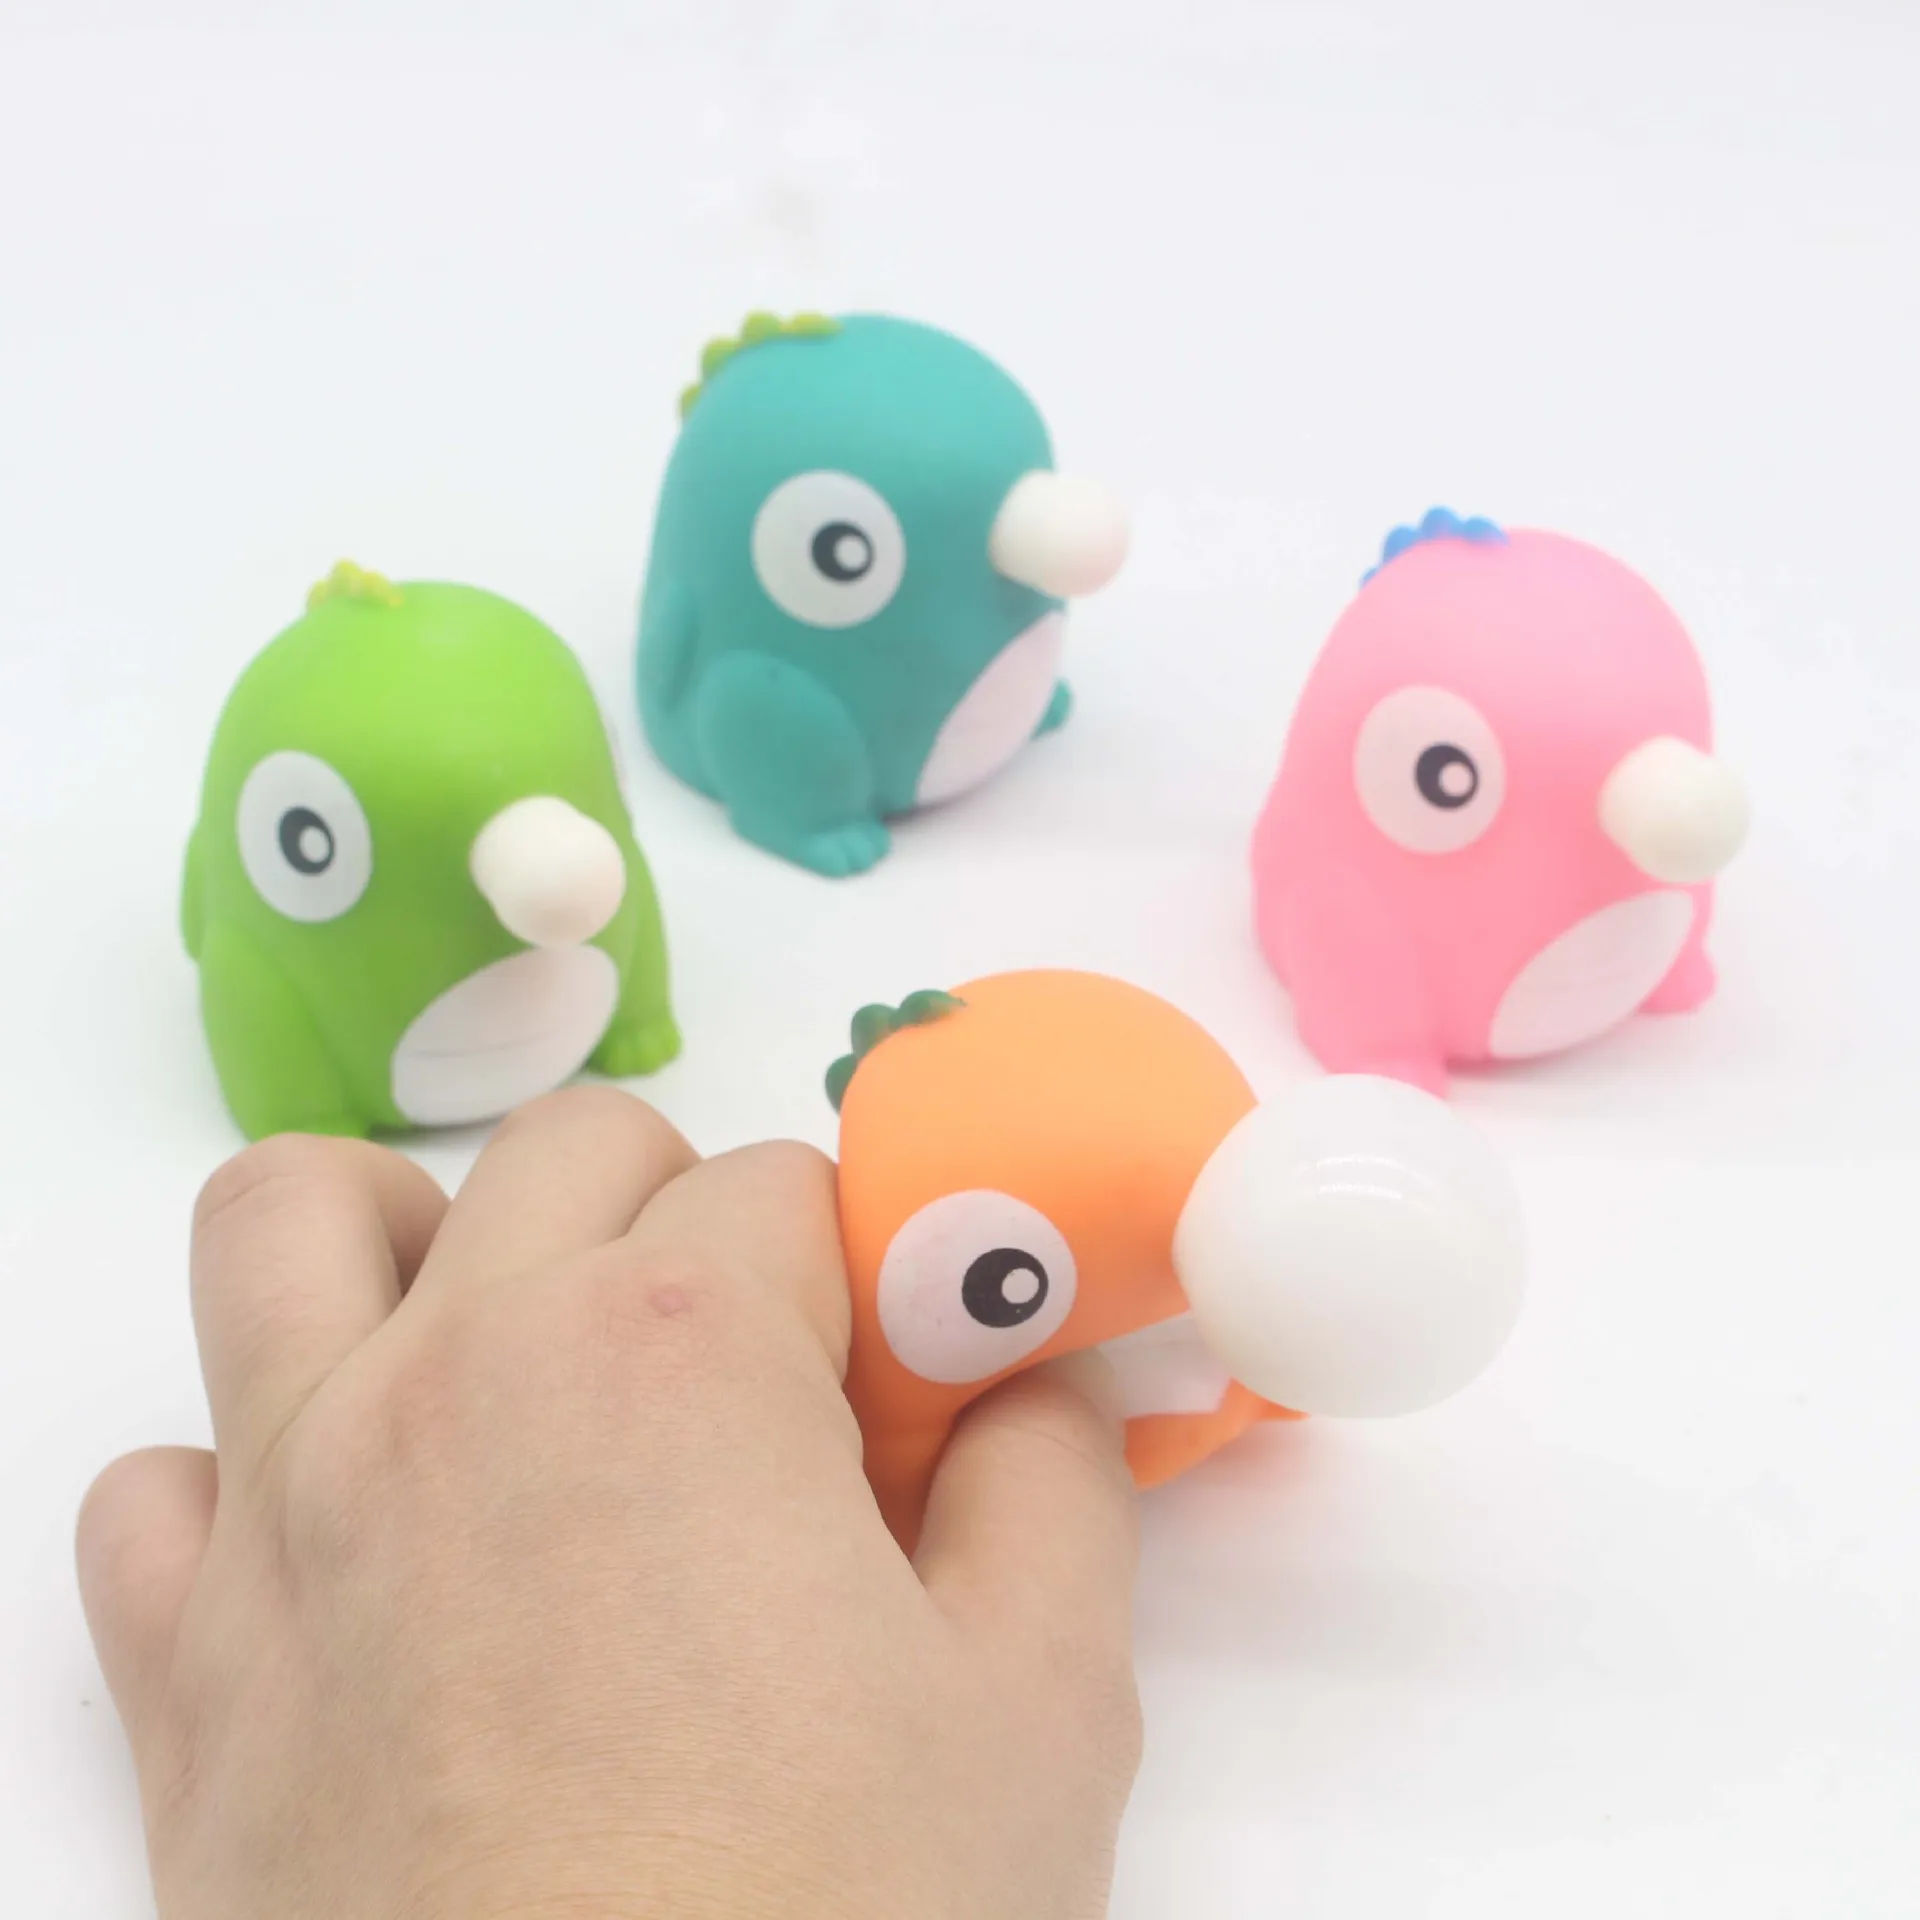 Anti-Stress Squeeze Toys Anniversaire Animaux Jouets 1 pc Dessin Animé  Animal Squeeze Anti-Stress Jouets Pour Enfants Garçons Filles - AliExpress